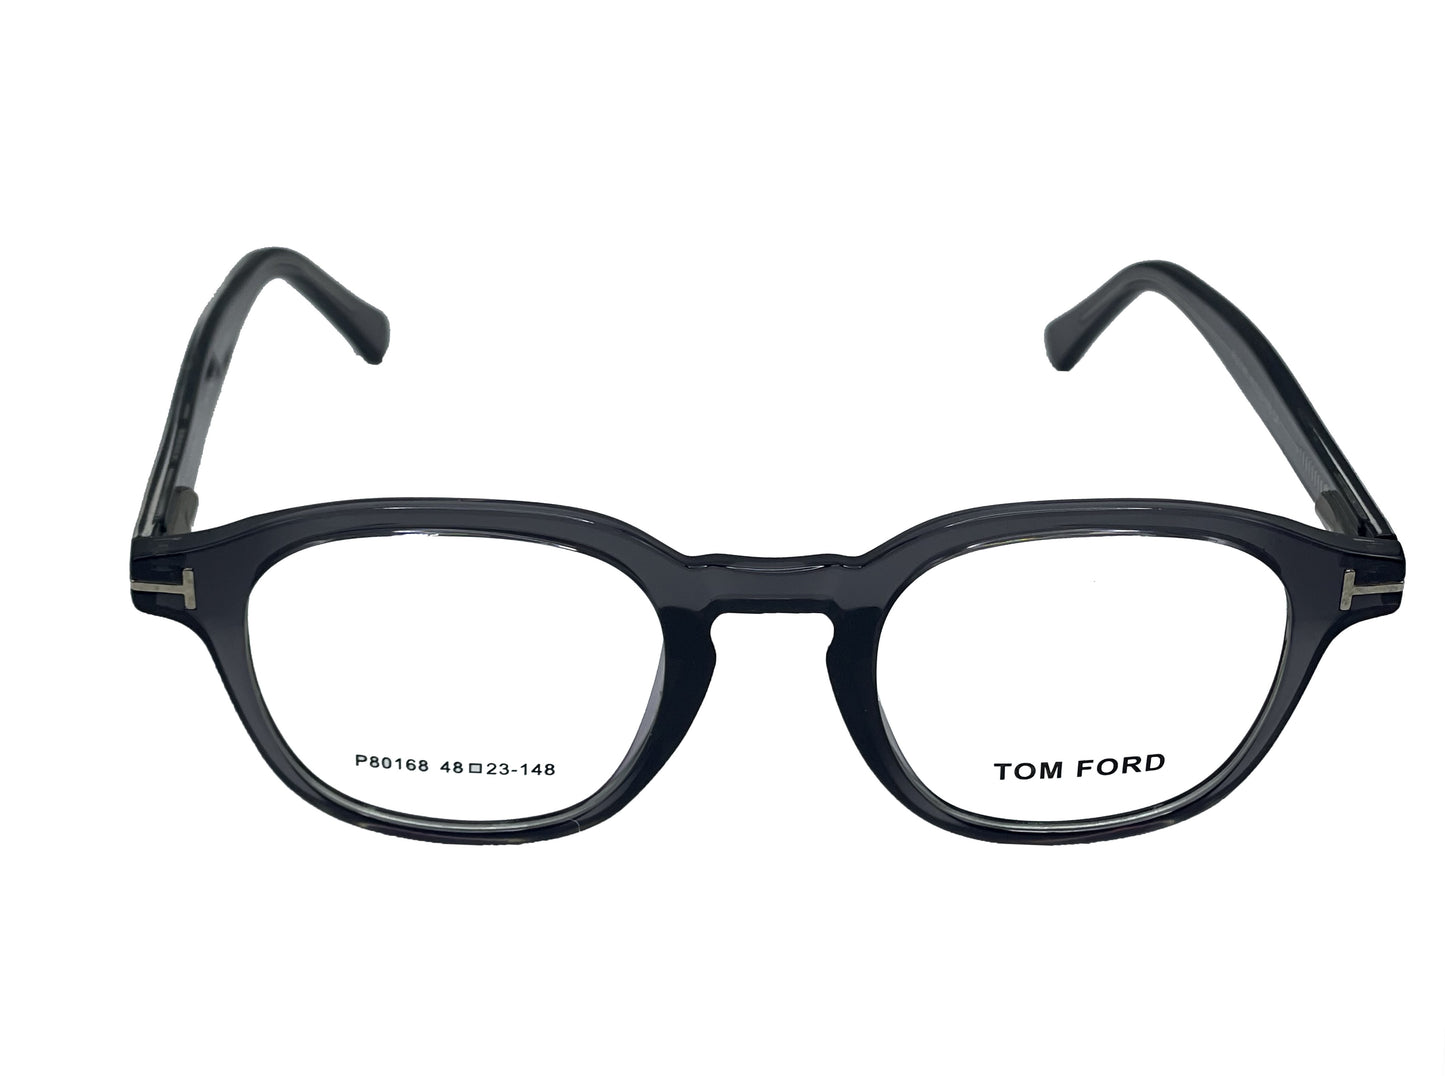 NS Deluxe - 80168 - Grey - Eyeglasses